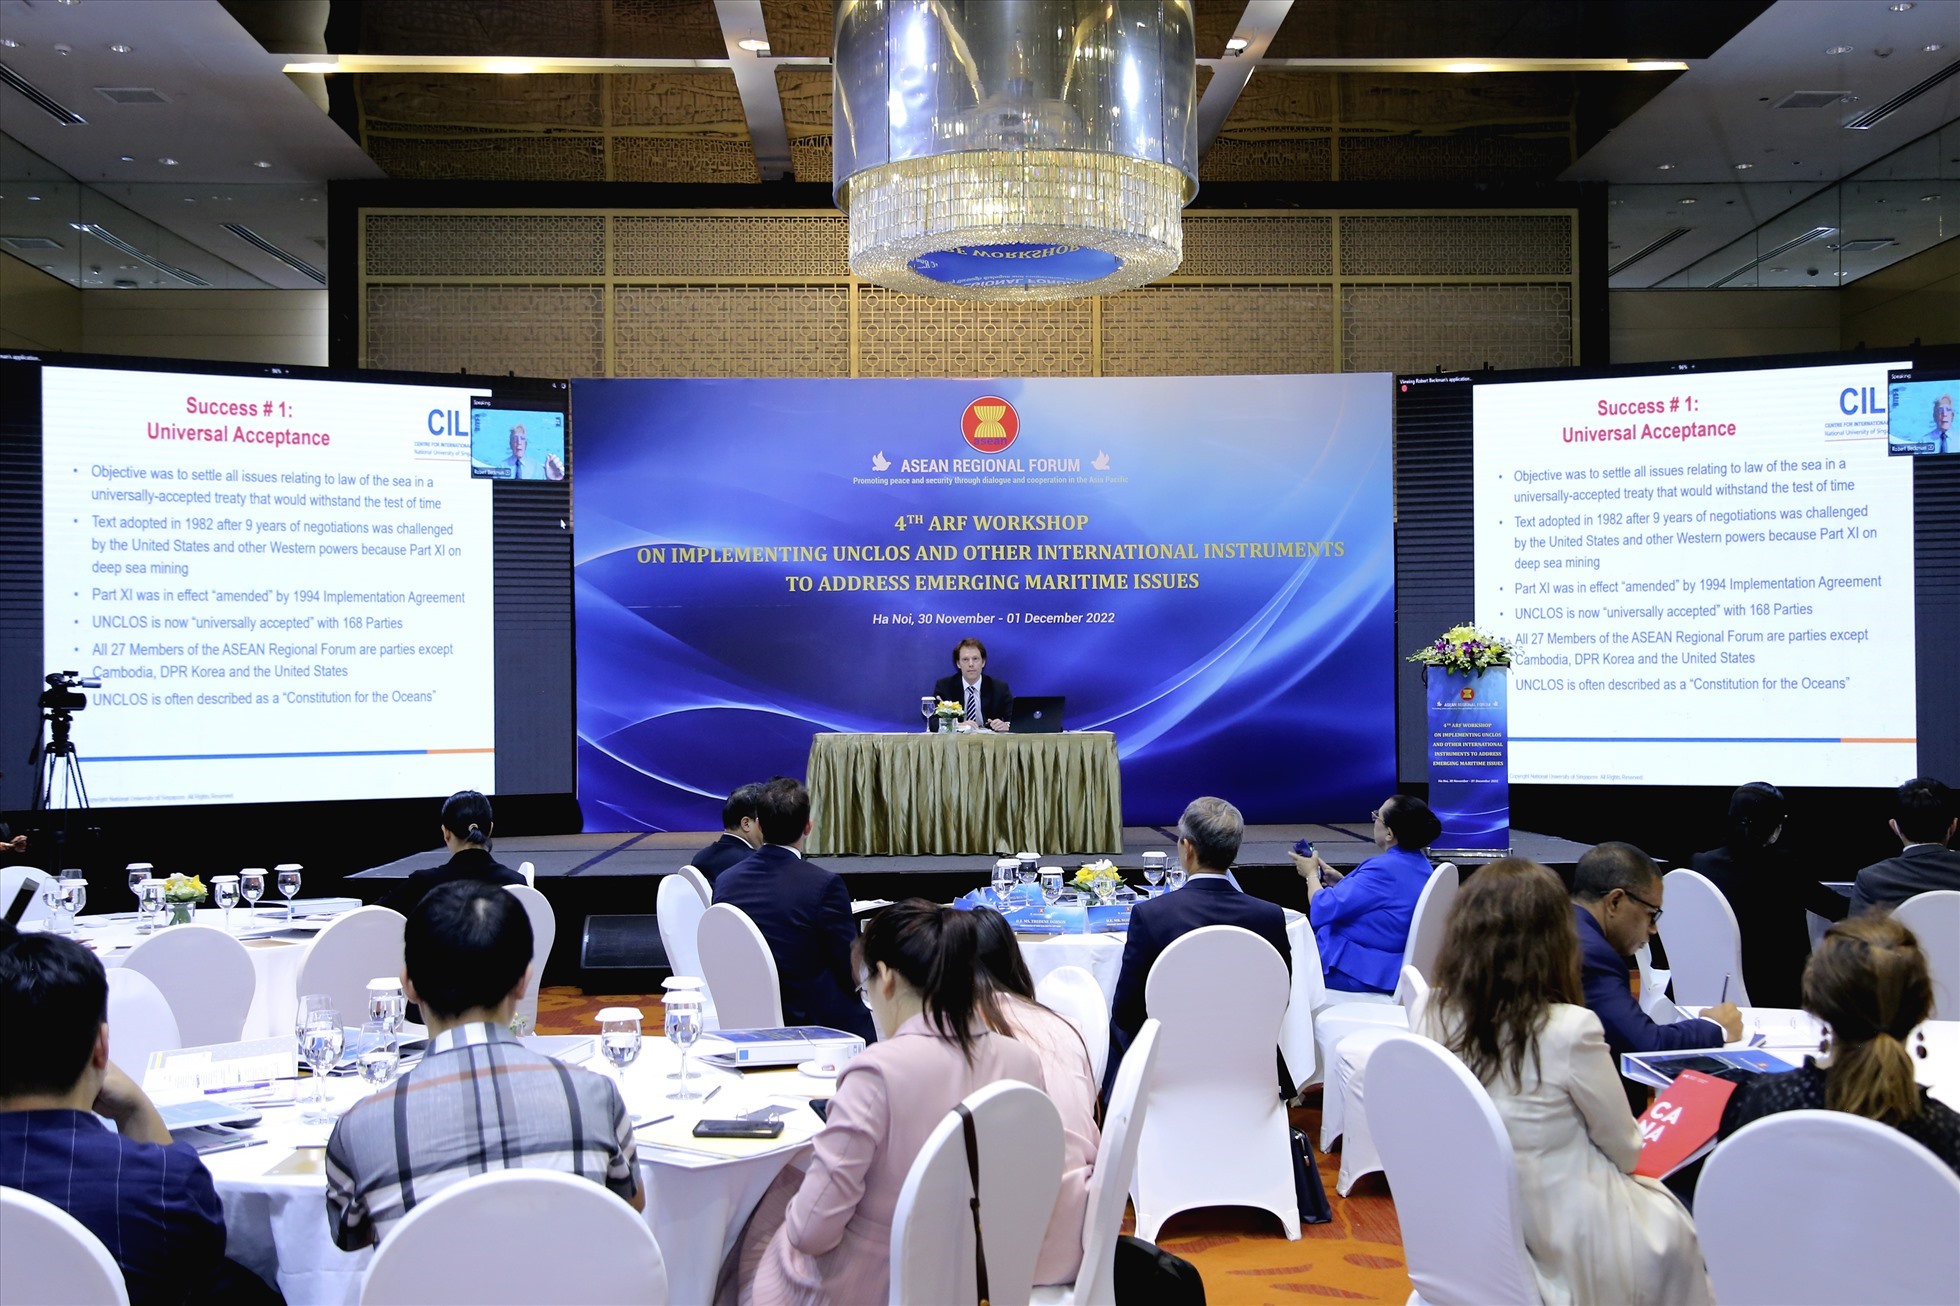 Hội thảo lần thứ tư của Diễn đàn Khu vực ASEAN (ARF) về vận dụng Công ước của Liên Hợp Quốc về Luật biển 1982 và các văn kiện pháp lý quốc tế khác trong ứng phó với các thách thức đang nổi lên trên biển. Ảnh: Bộ Ngoại giao